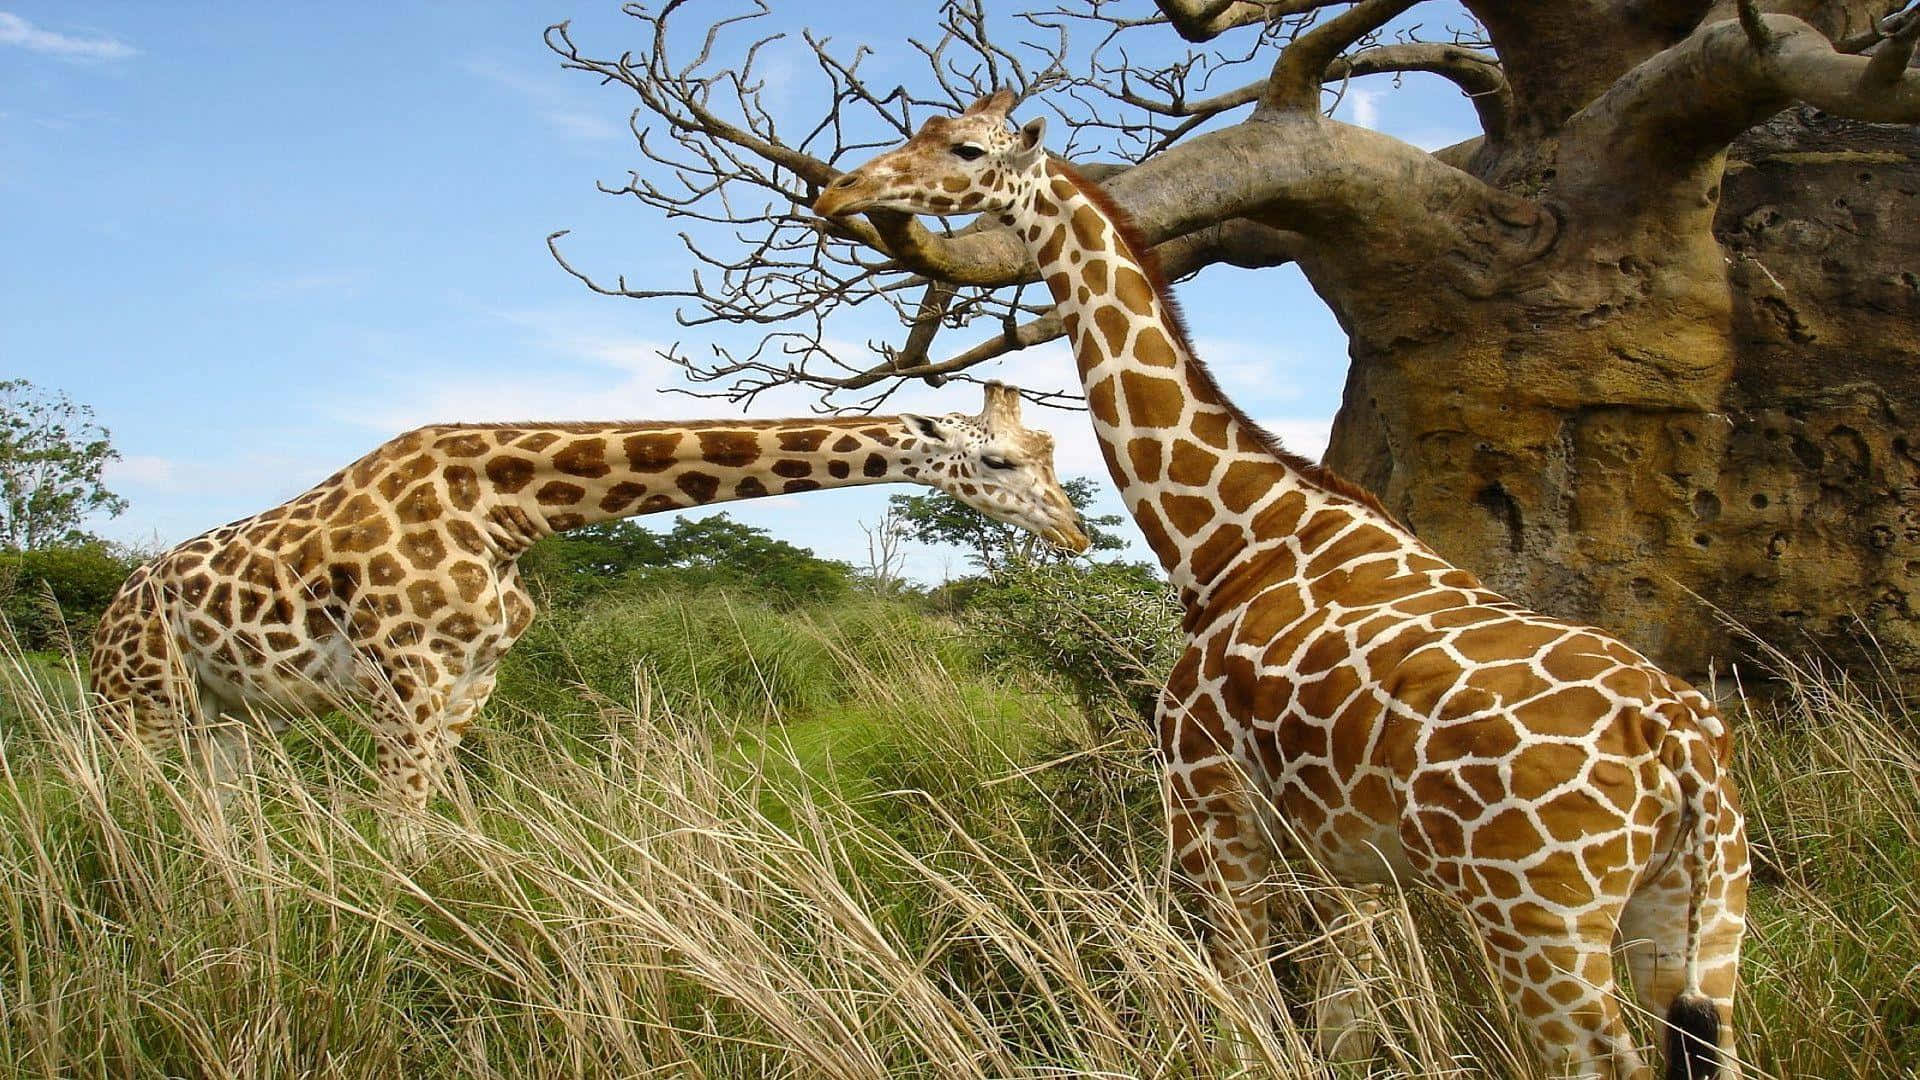 Vildadjur Giraff Stående På Gräset Nära Trädet Bild